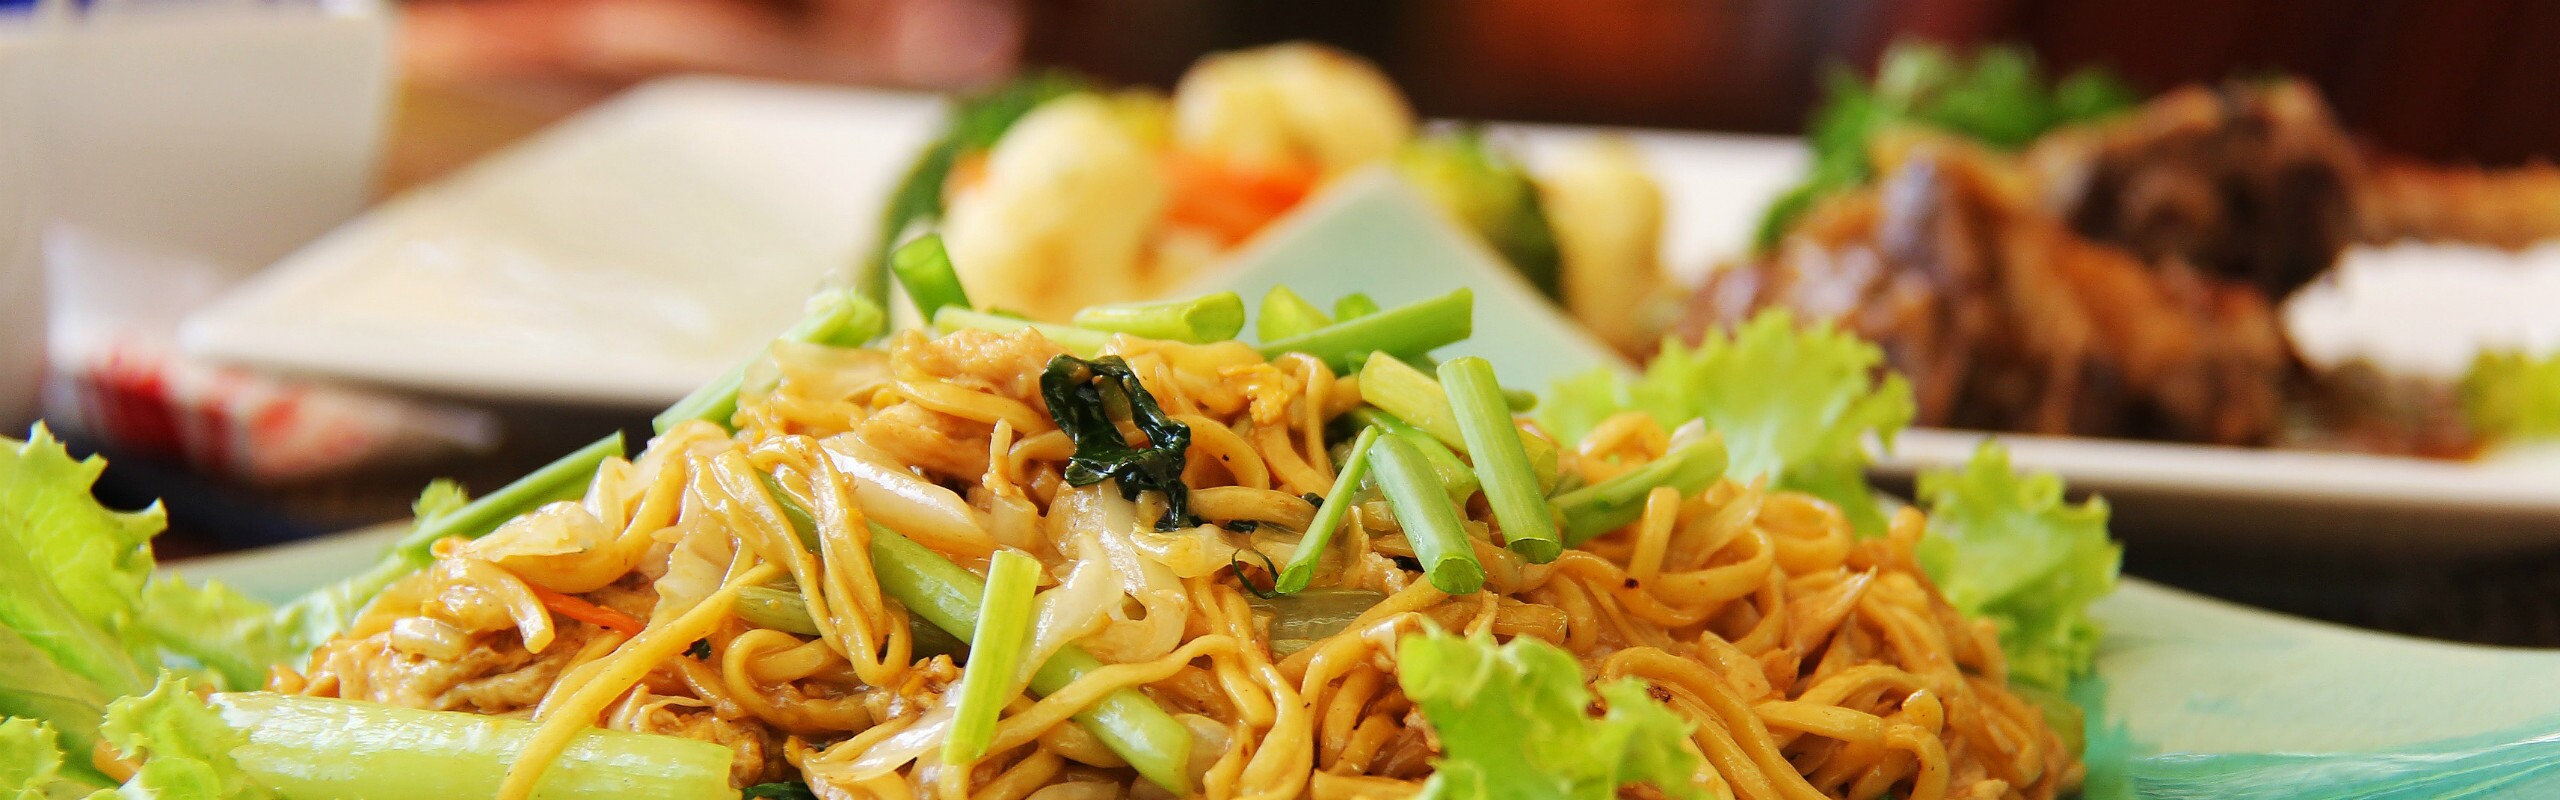 Top 9 Cambodian Street Foods